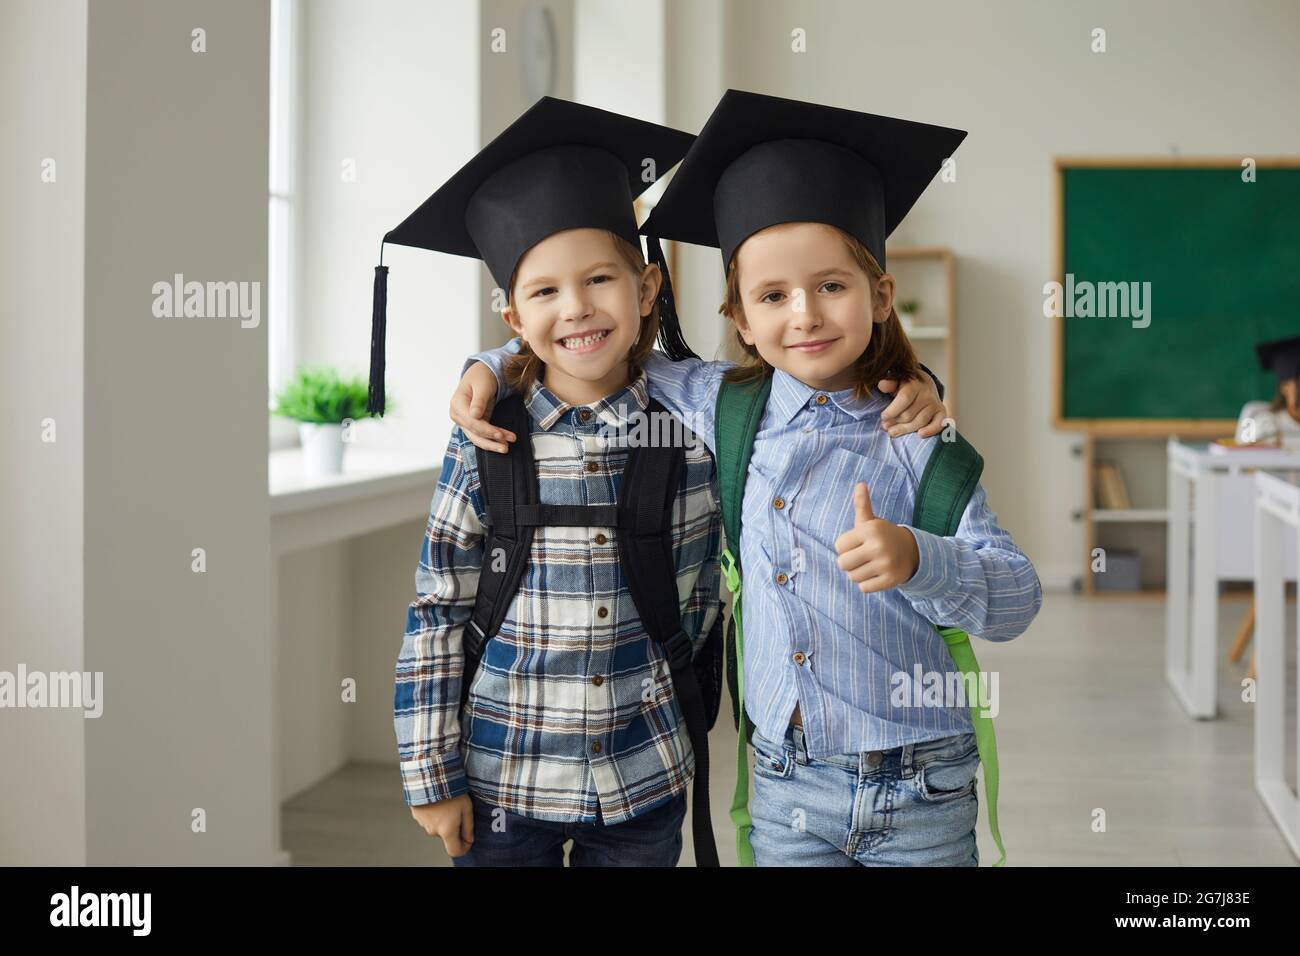 Porträt eines fröhlichen kleinen Studenten in Abschlusskappe, lächelnd an die Kamera umarmt Stockfoto